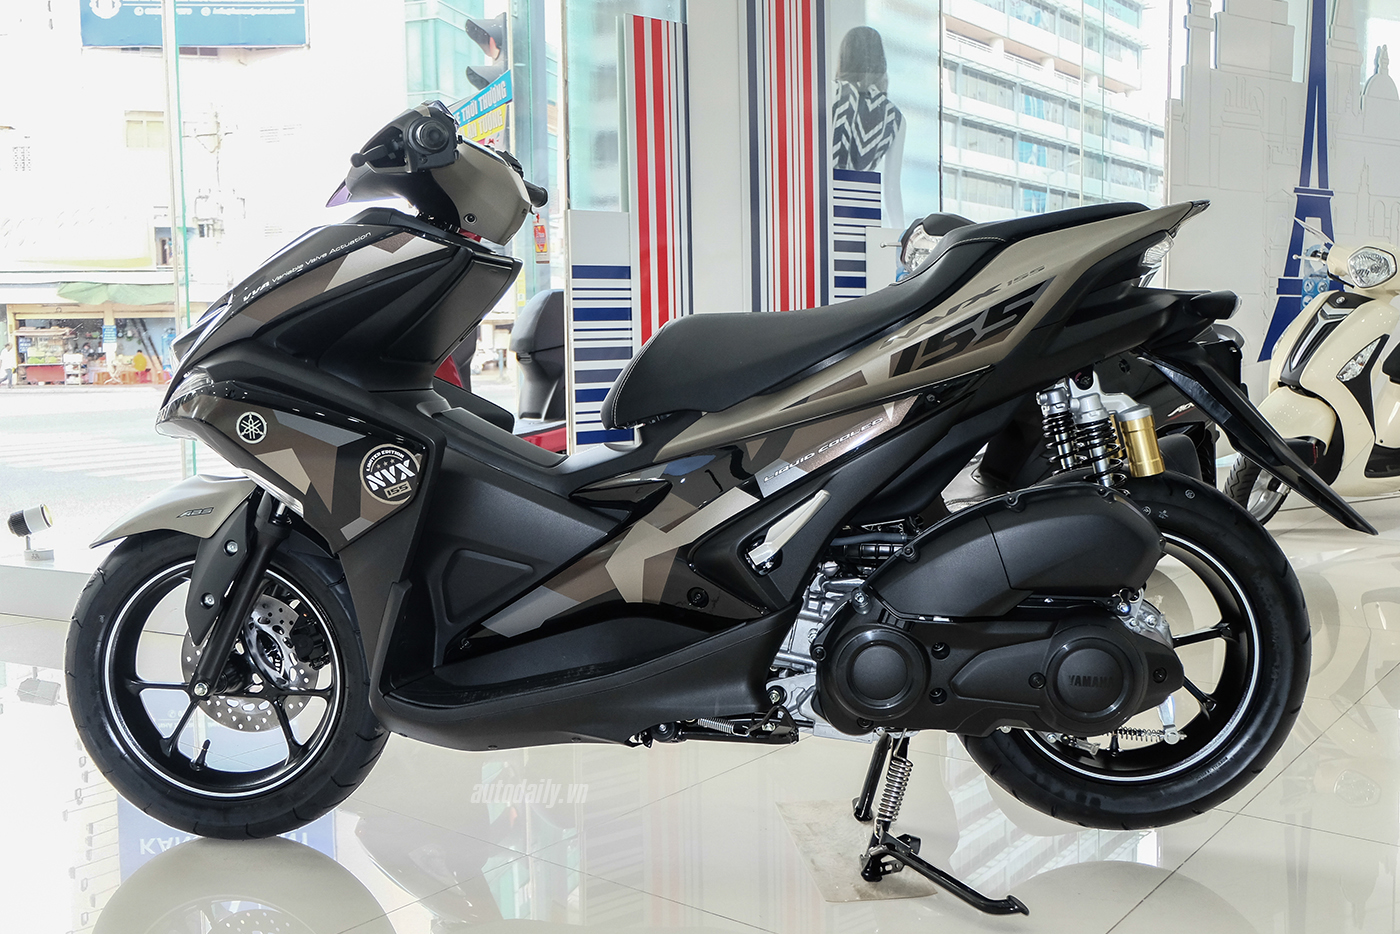 Yamaha Nvx 155 Modified - Modified Motorcycle NVX aerox gdr155 L155 nvx